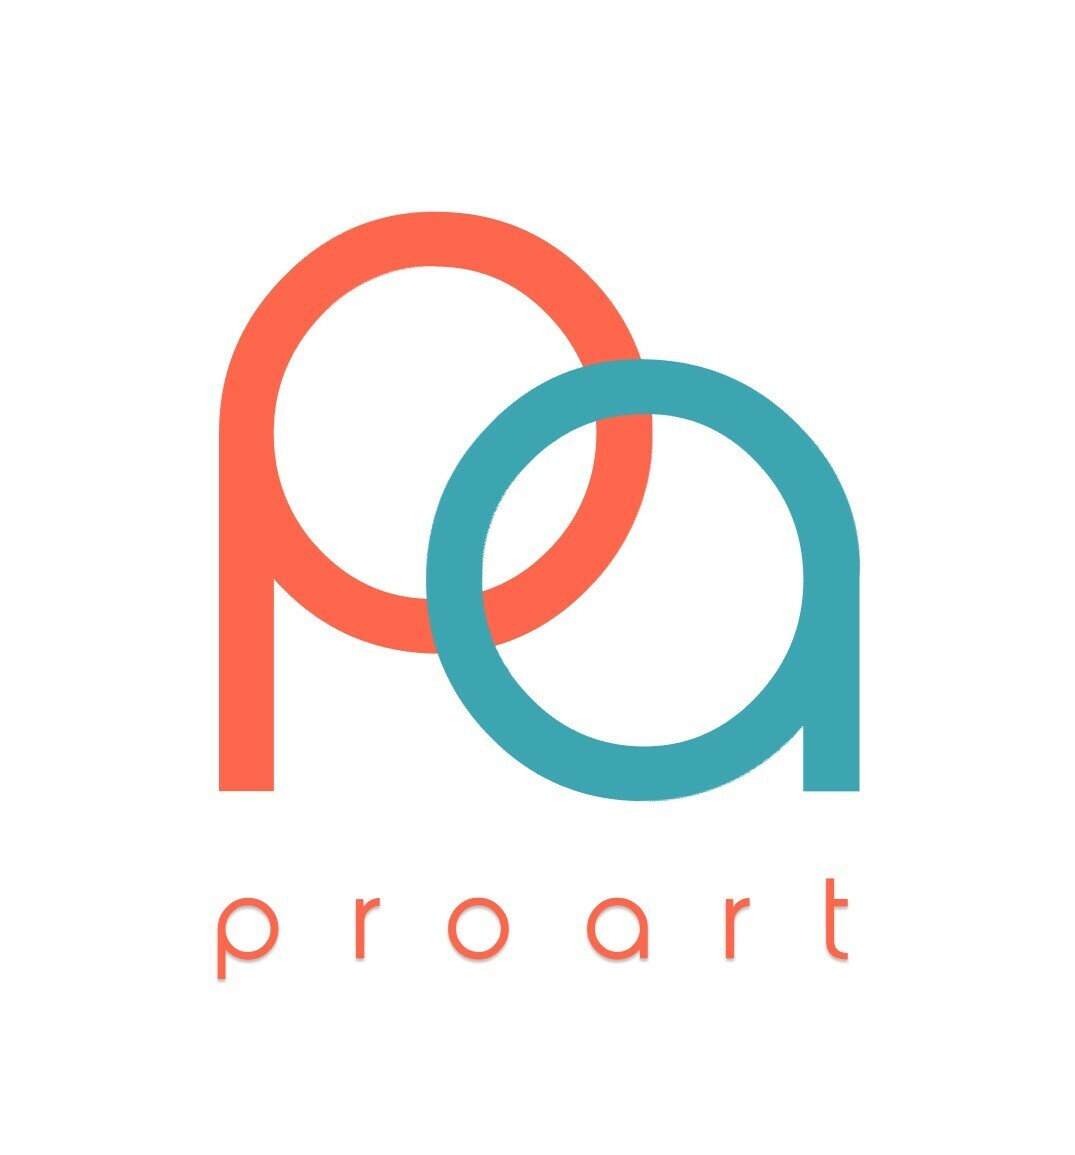  Онлайн школа цифровой иллюстрации Proart 